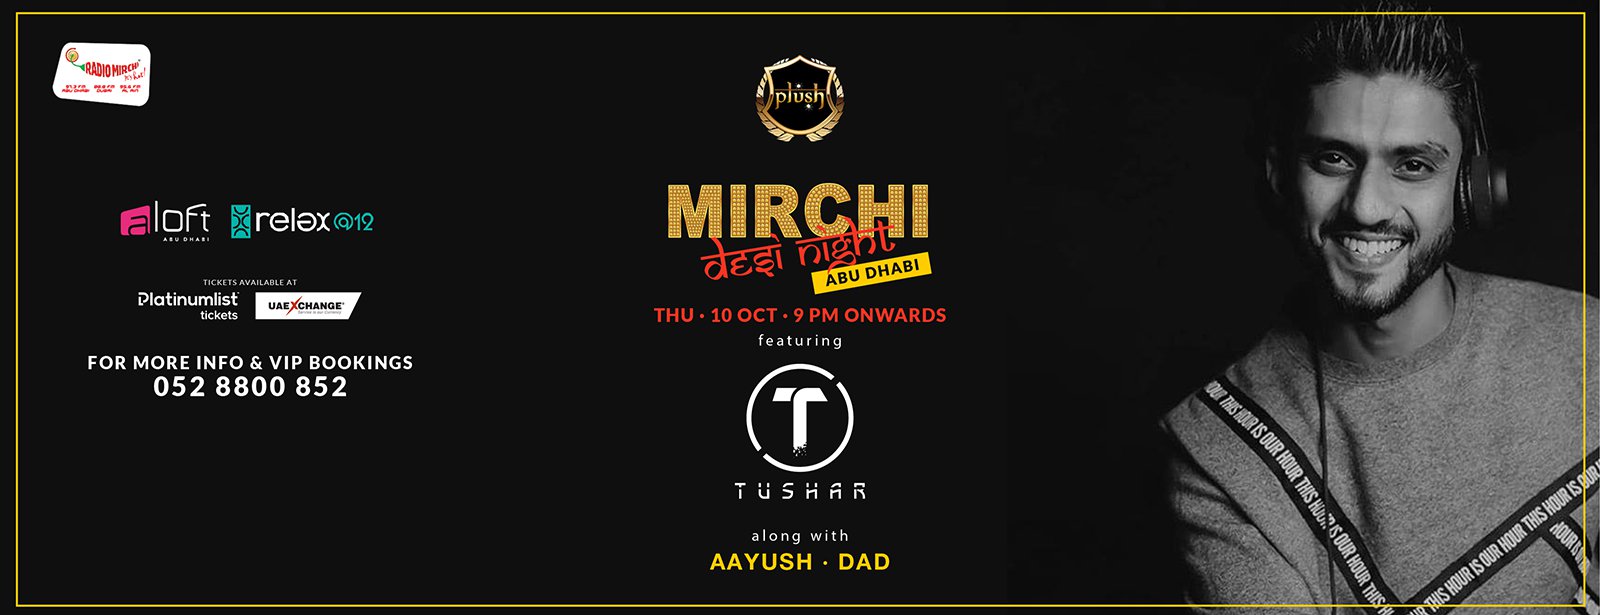 Mirchi Desi Night with DJ Tushar, DJ DAD and DJ Aayush - Coming Soon in UAE